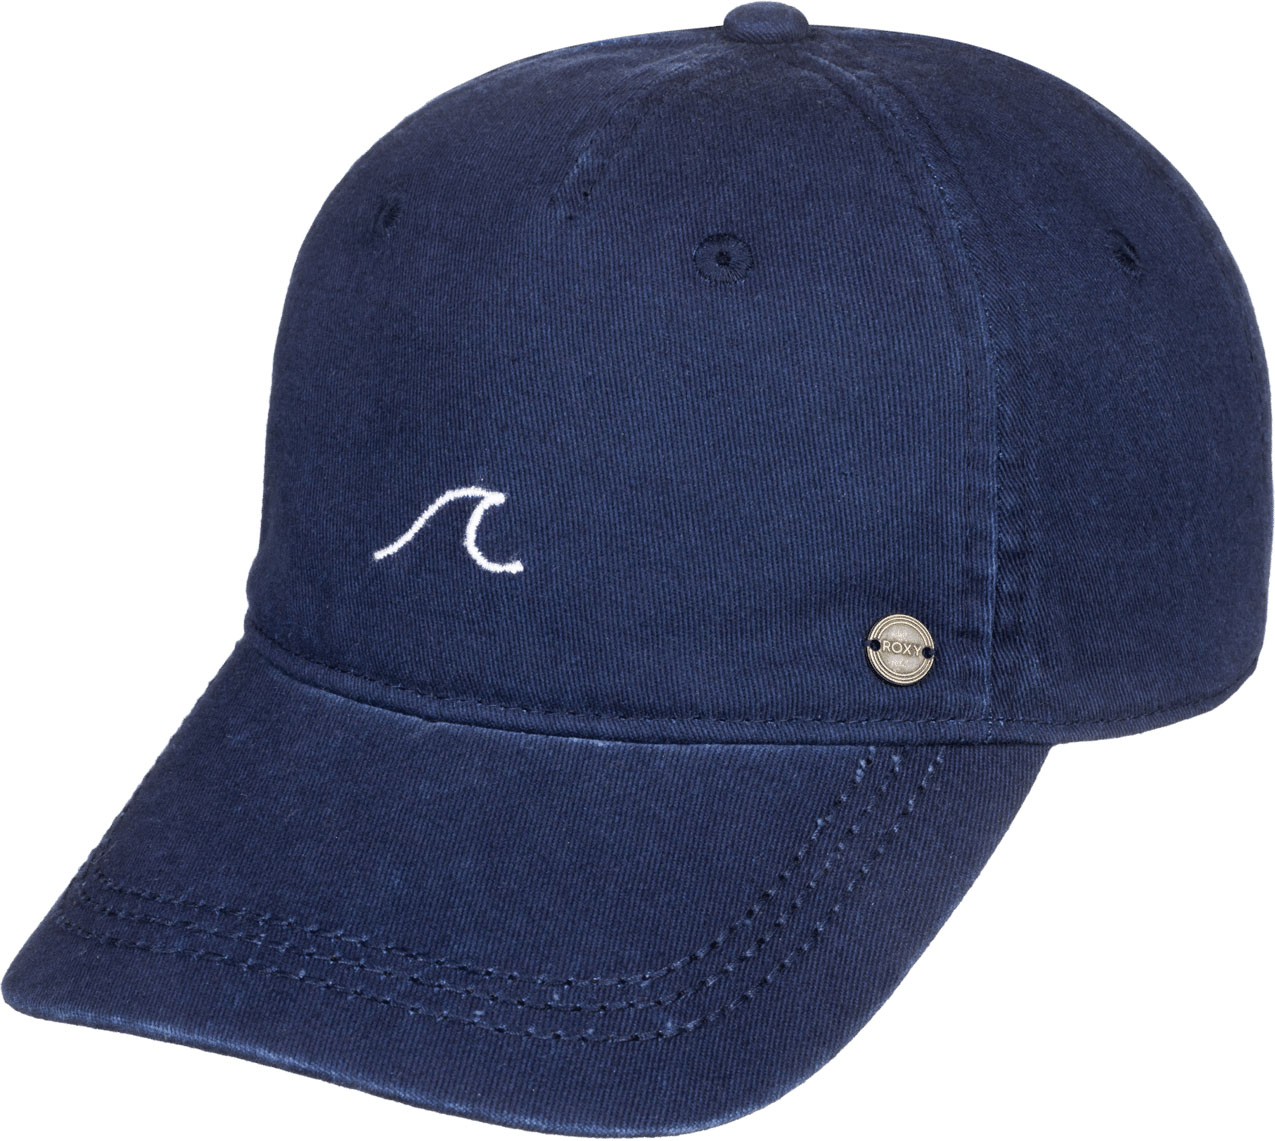 Roxy Womens Next Level Baseball Hat